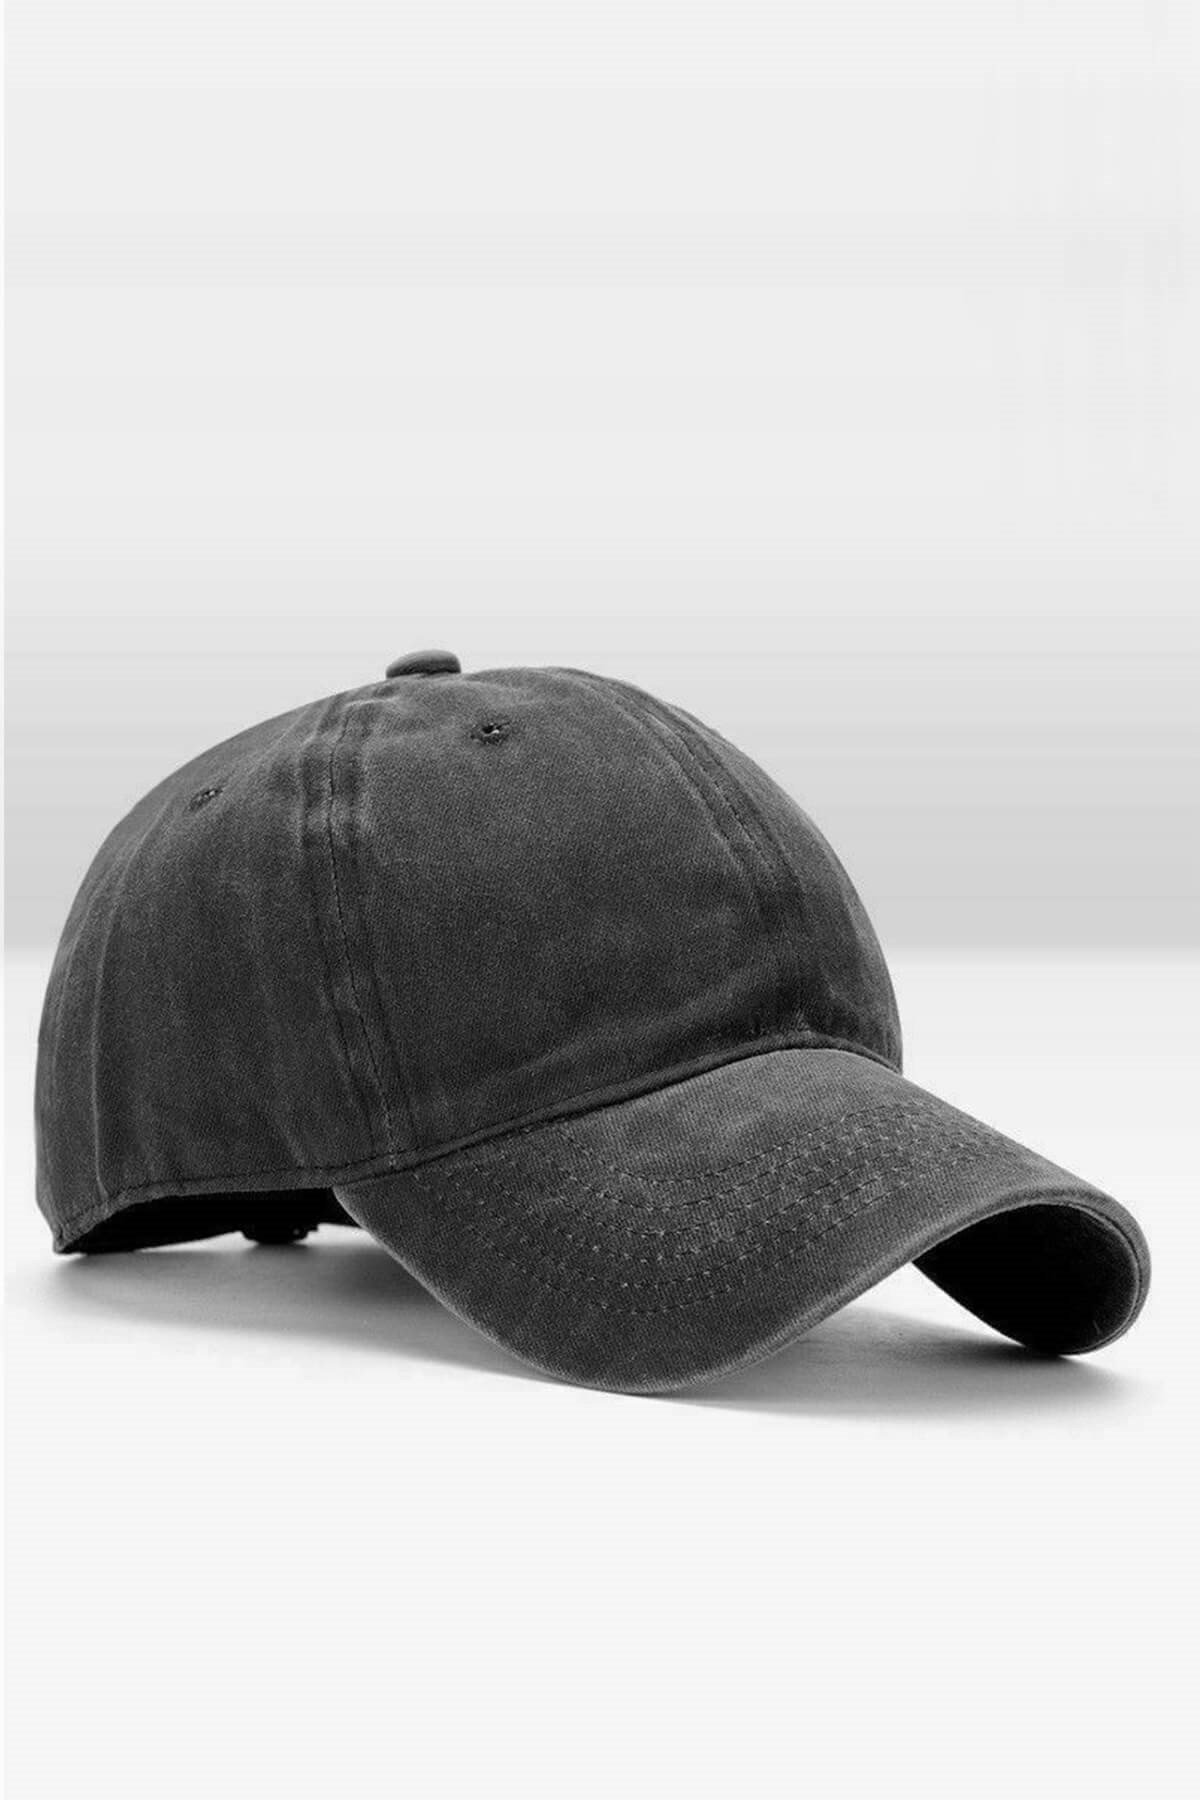 Külah Erkek Eskitme Şapka Yazlık Outdoor Kep Kasket-Siyah KLH6895